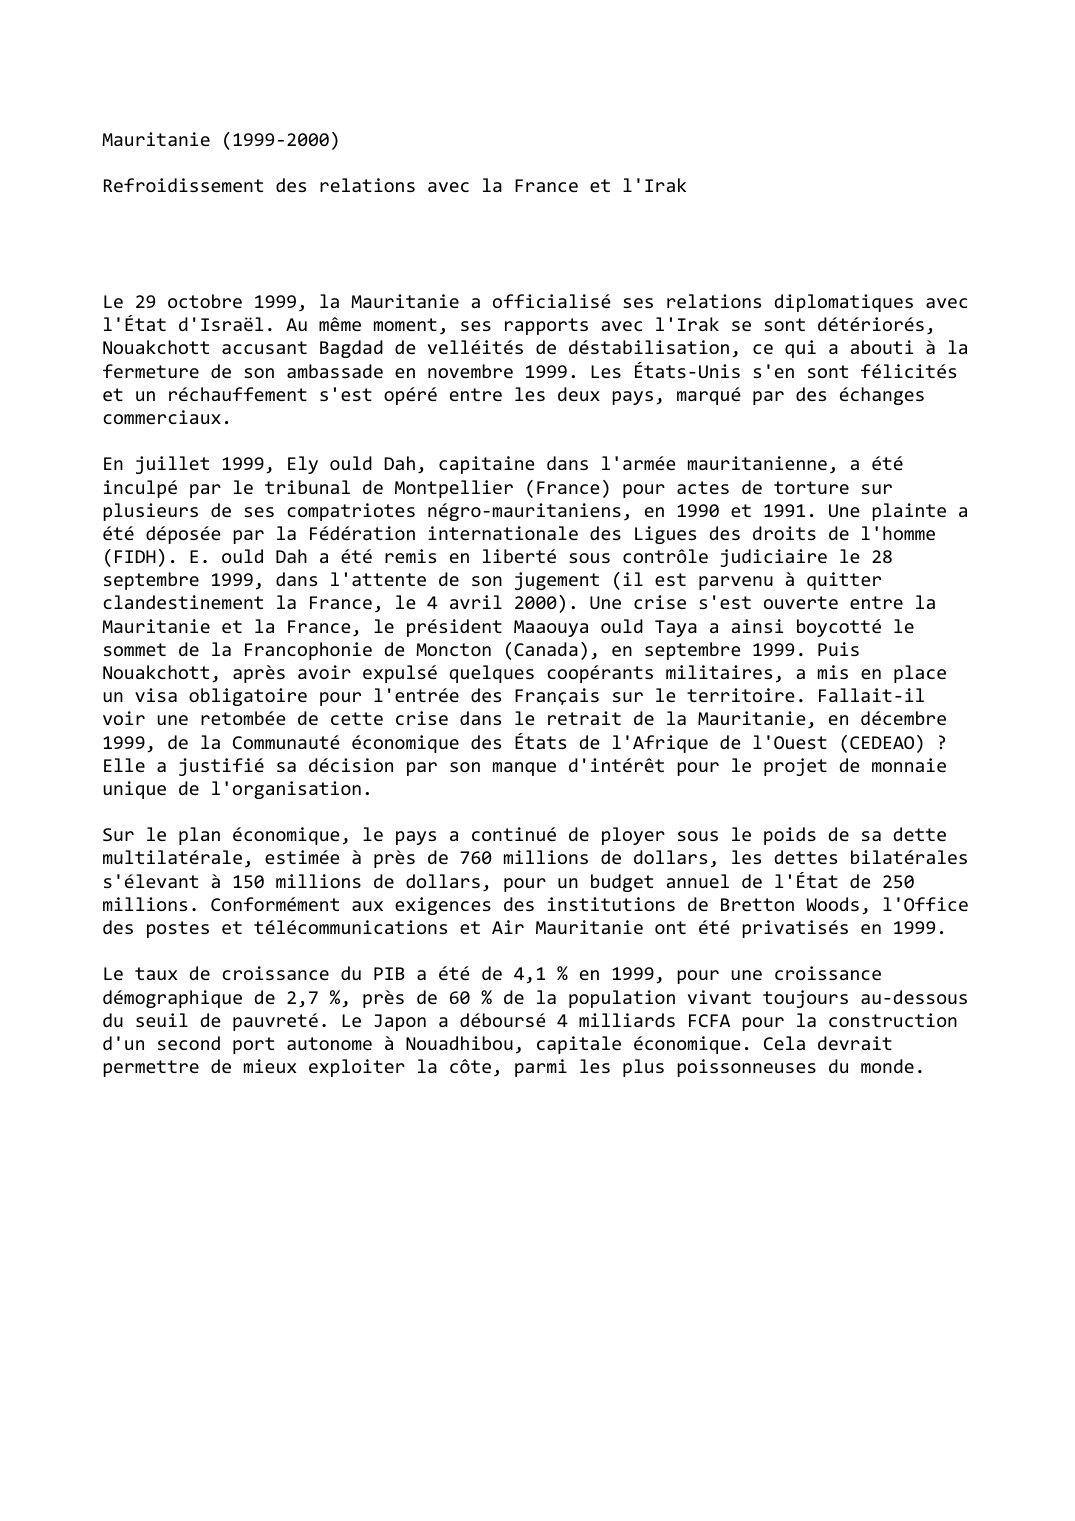 Prévisualisation du document Mauritanie (1999-2000)

Refroidissement des relations avec la France et l'Irak